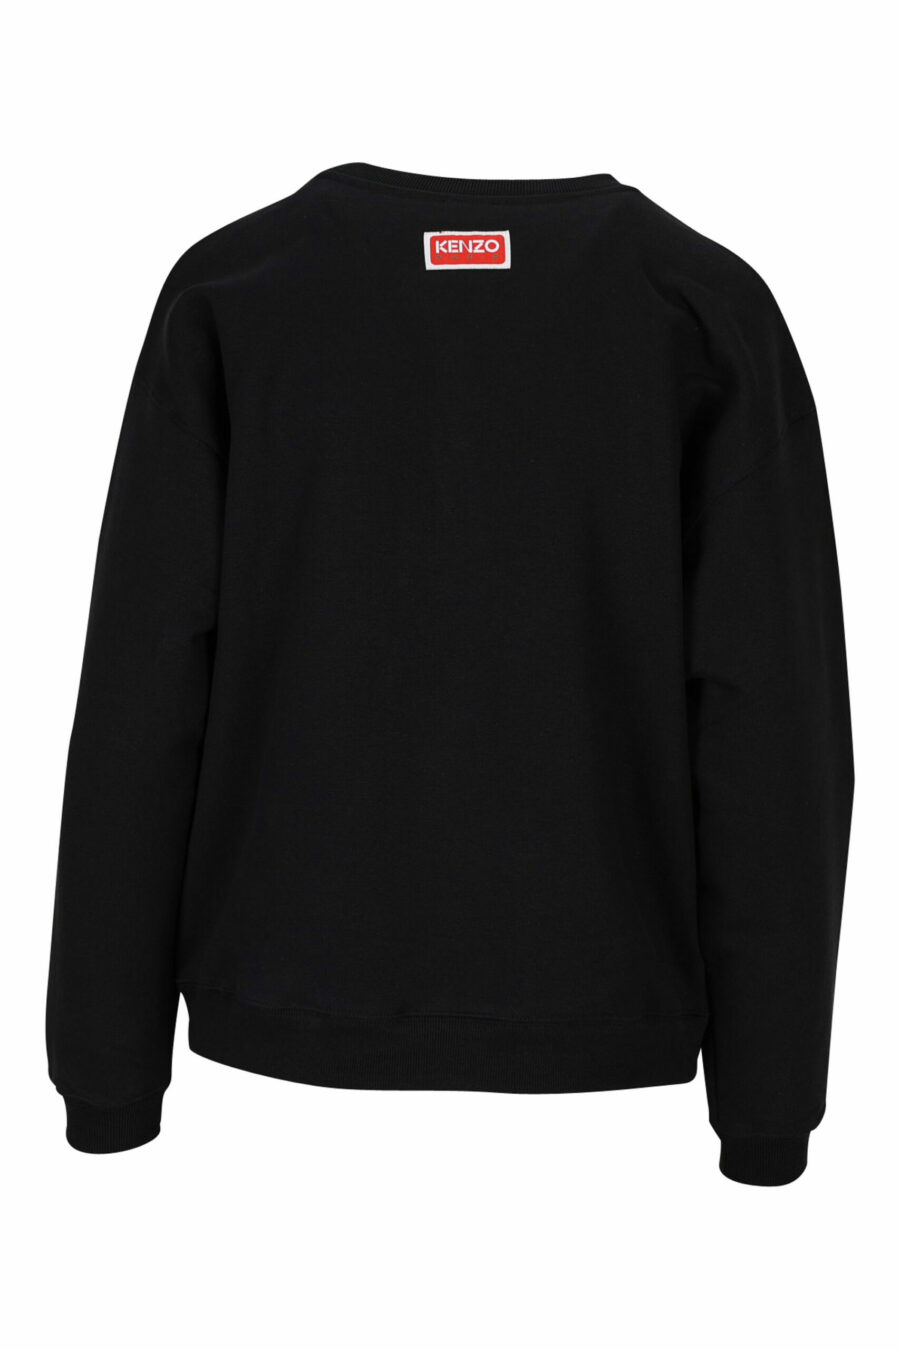 Schwarzes Sweatshirt mit "boke flower" Logo - 3612230483033 1 skaliert